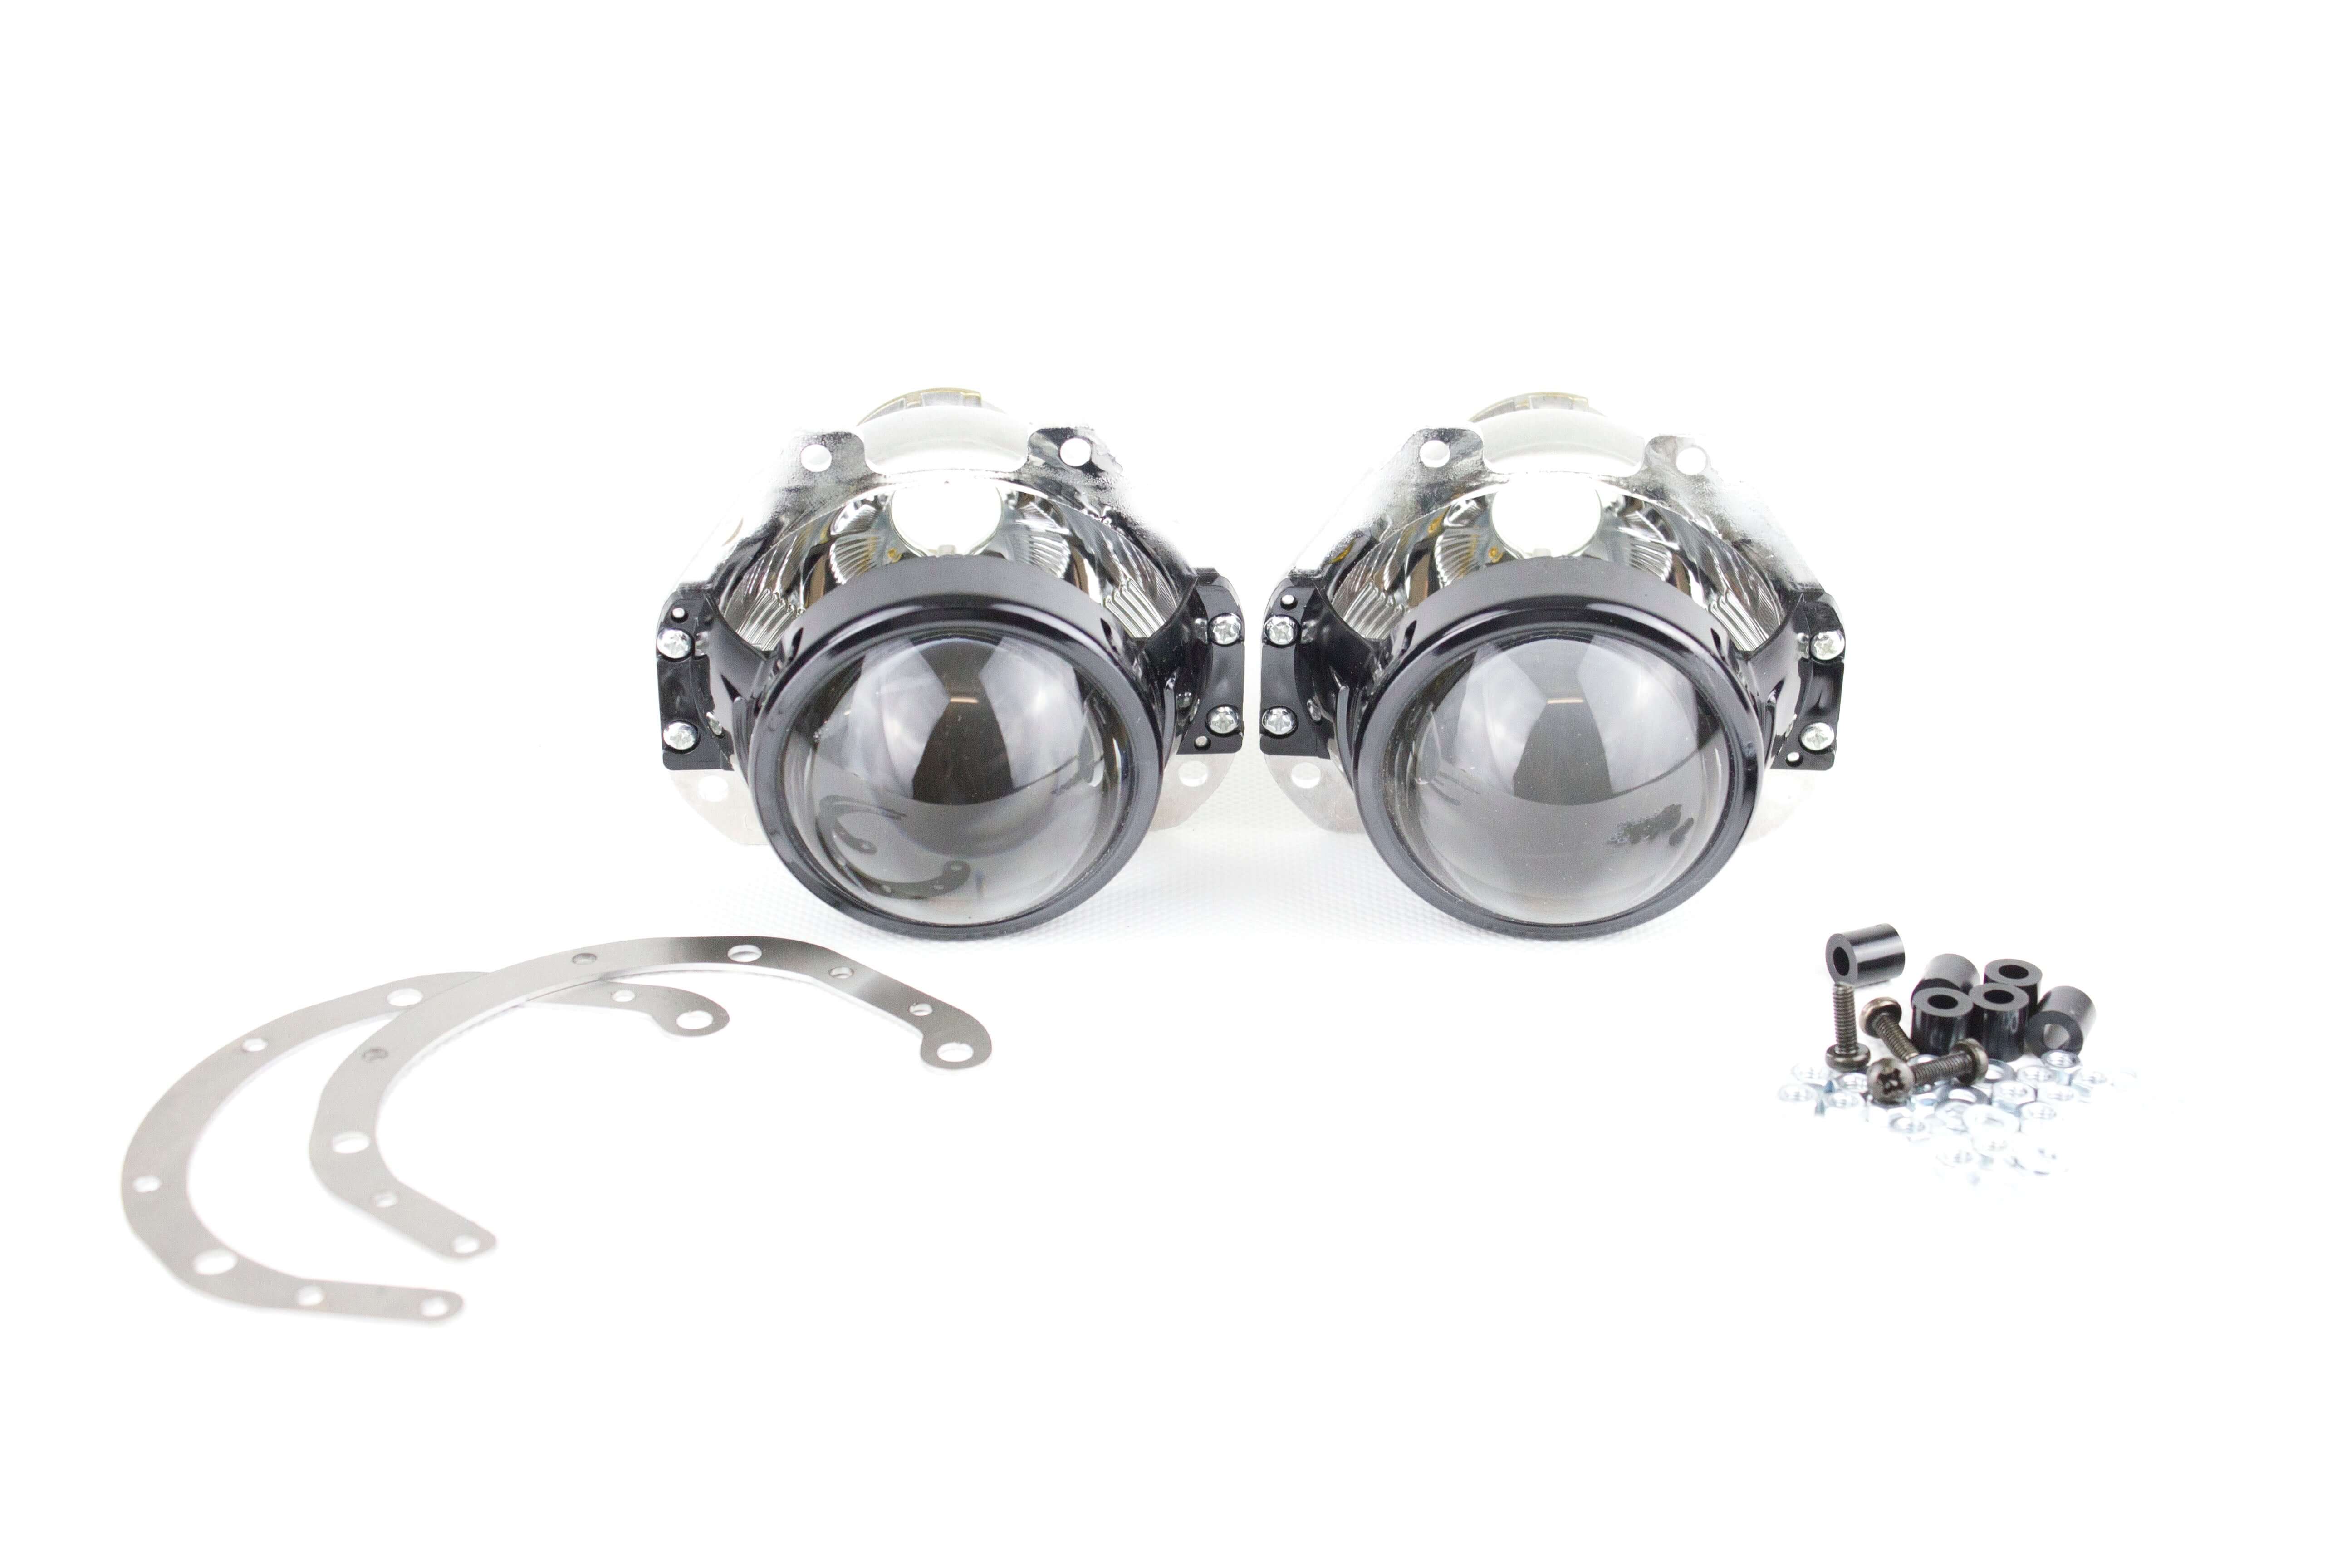 Ford Focus MK2 facelift 2.5 08-10 bi-xenon headlight repair & upgrade kit for xenon HID headlights